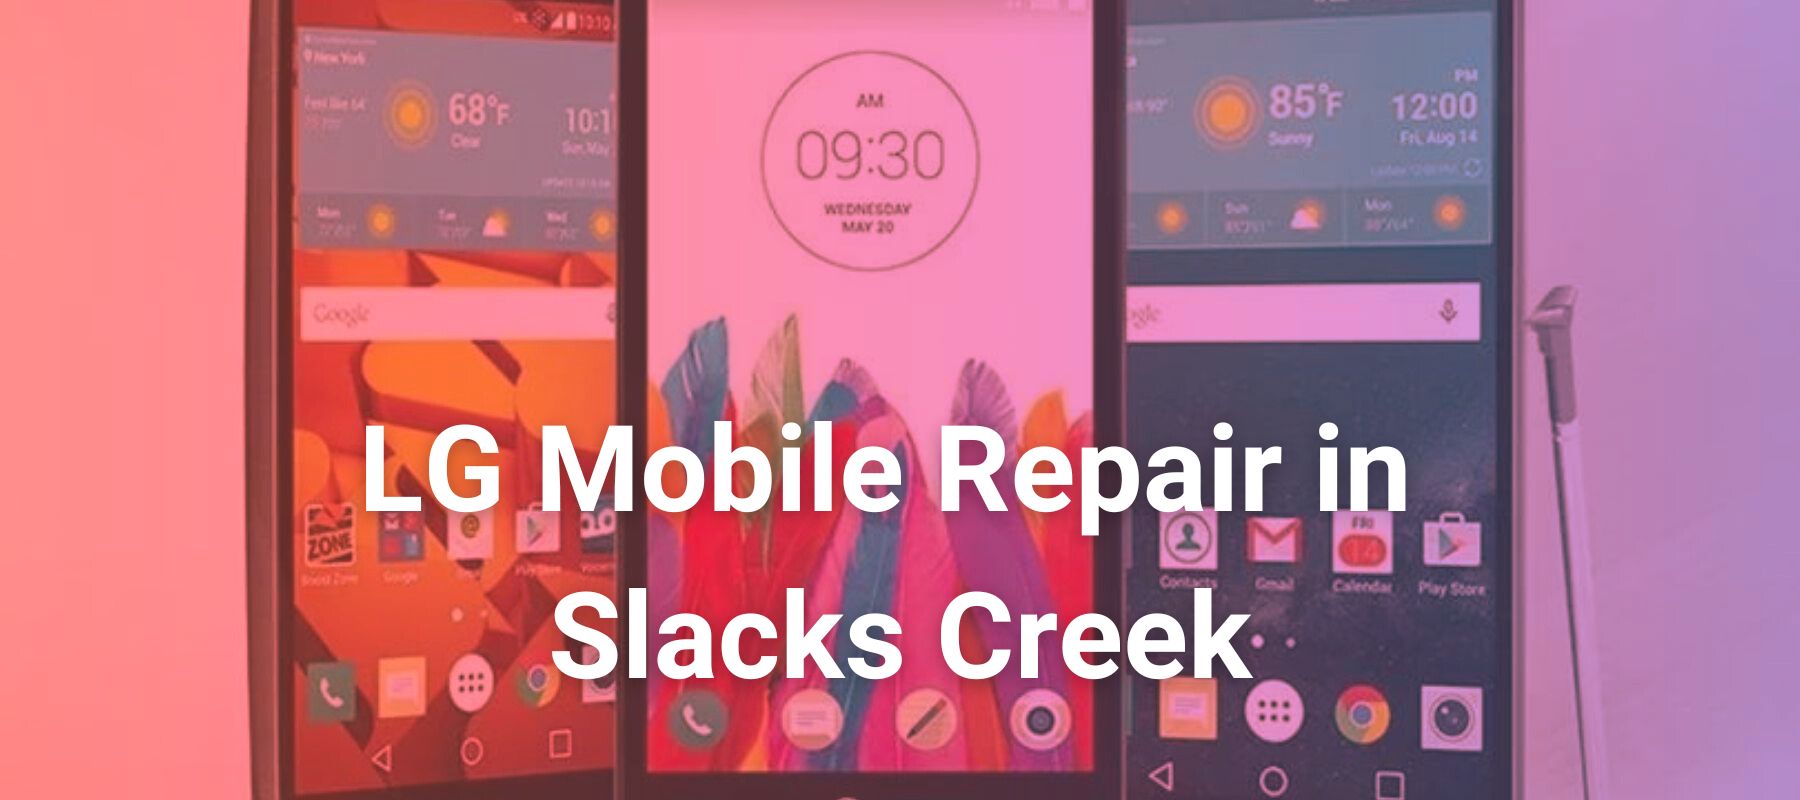 LG Mobile Repair in Slacks Creek